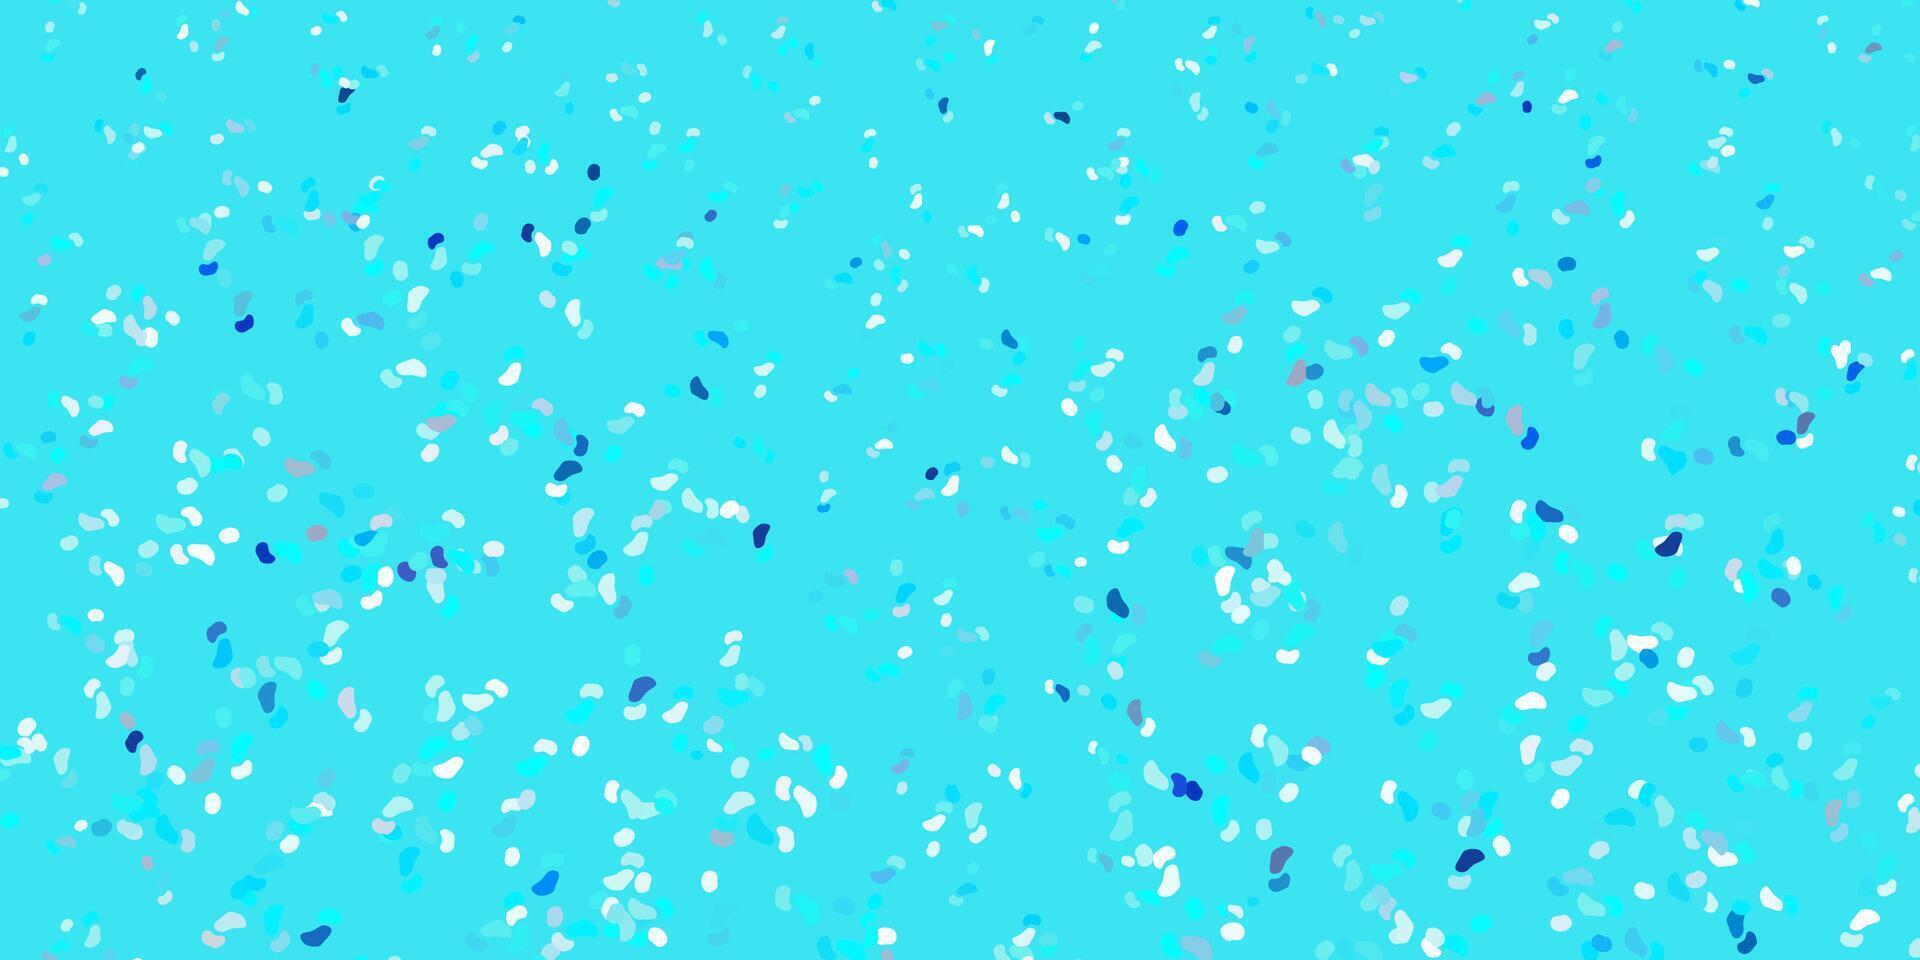 sfondo vettoriale azzurro con forme casuali.